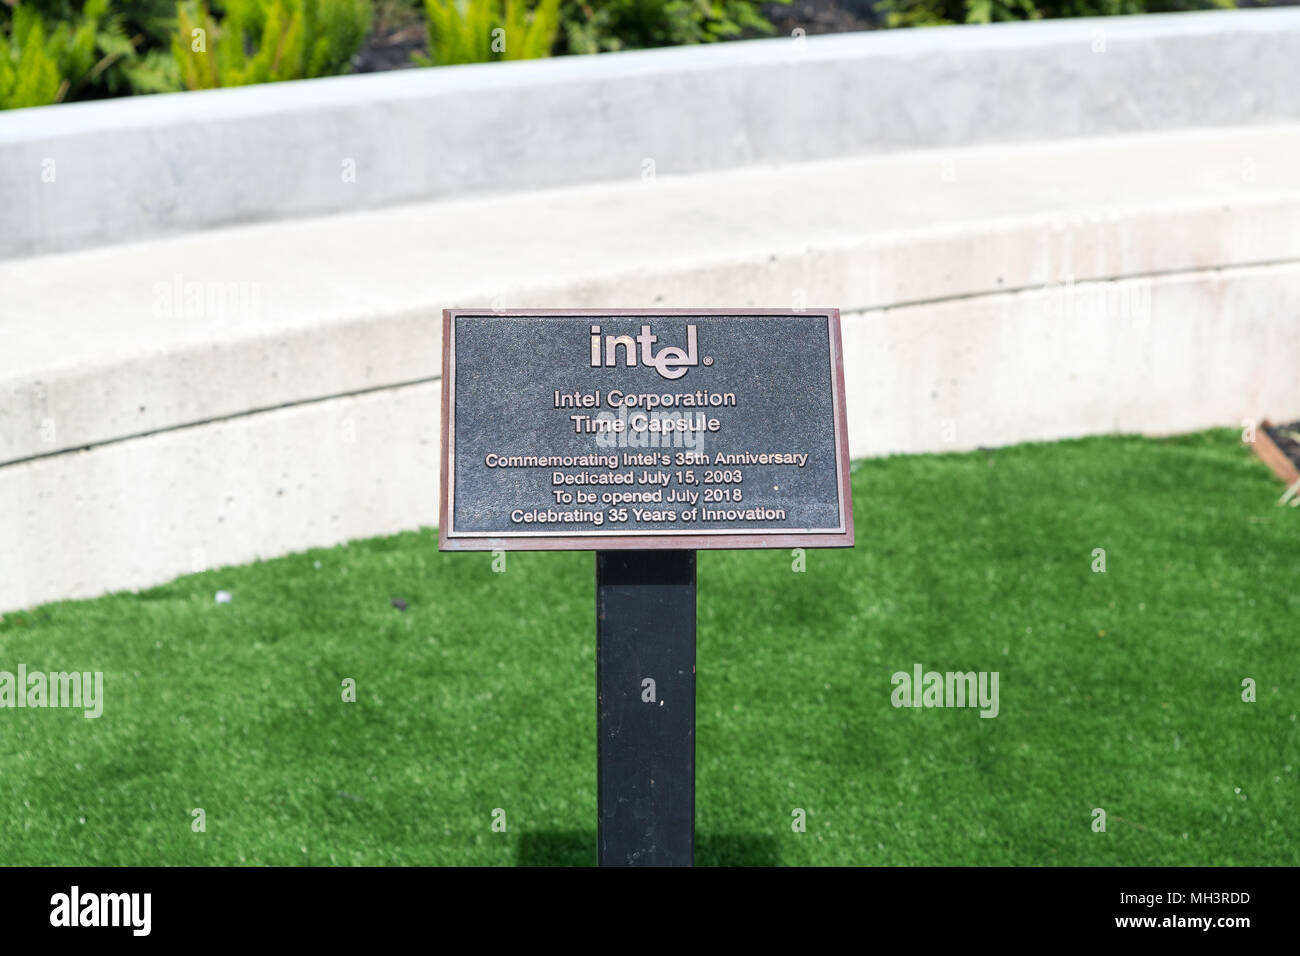 Santa Clara, Kalifornien, USA - 29. April 2018: Intel Corporation Time Capsule feiert 35 Jahre Innovation im weltweit Unternehmen Headquarte Stockfoto